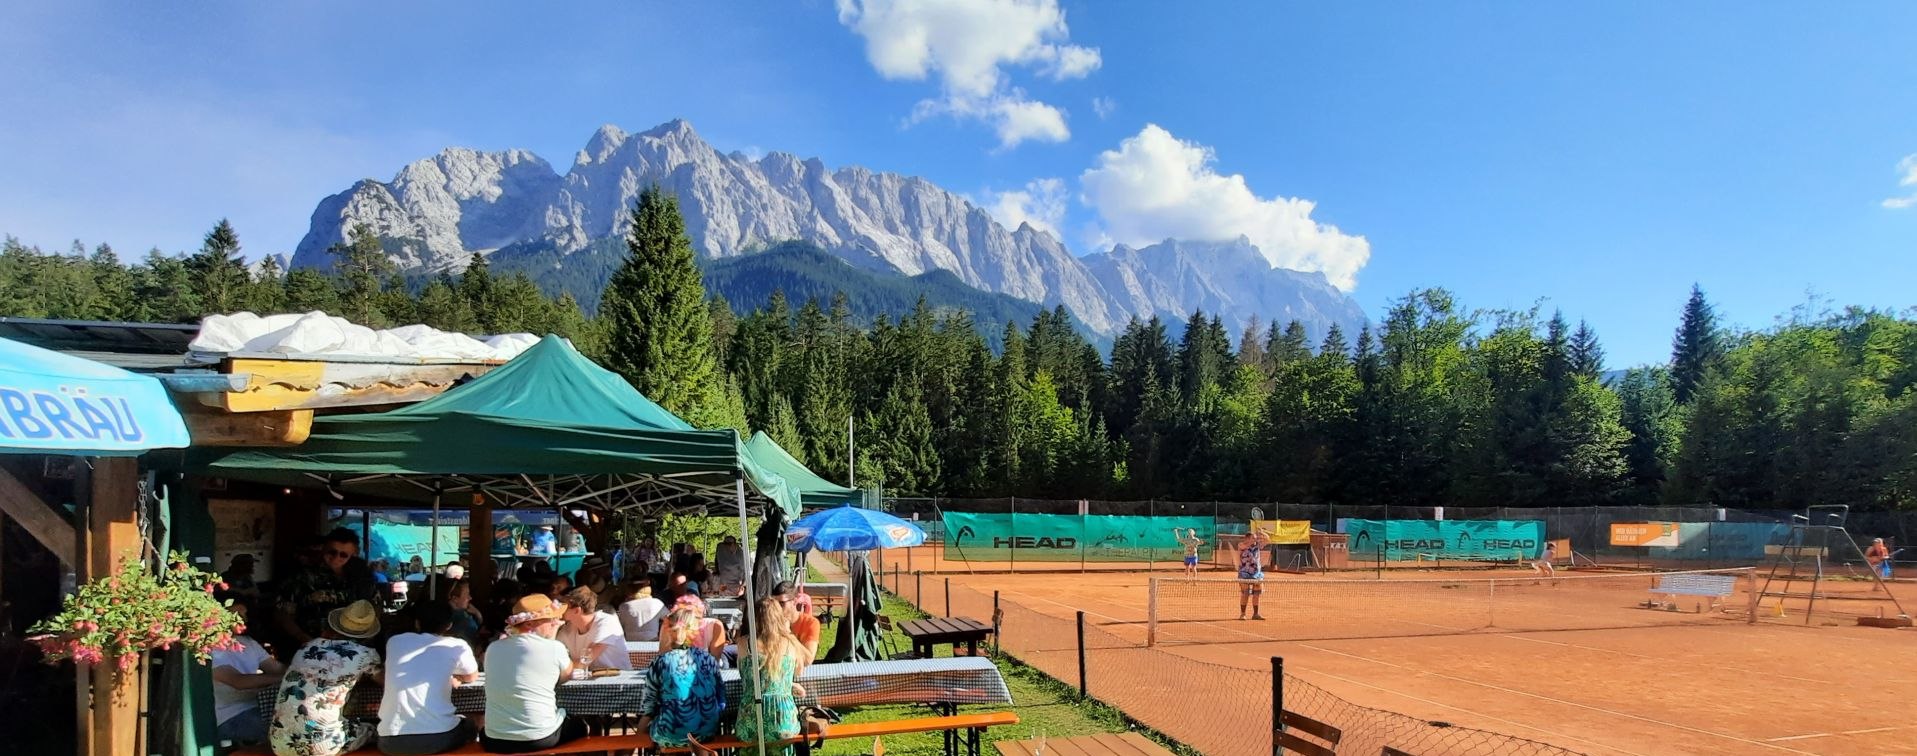 Tennisplatz in Grainau mit Zugspitzblick, © SCEG - Klaus Kiesel